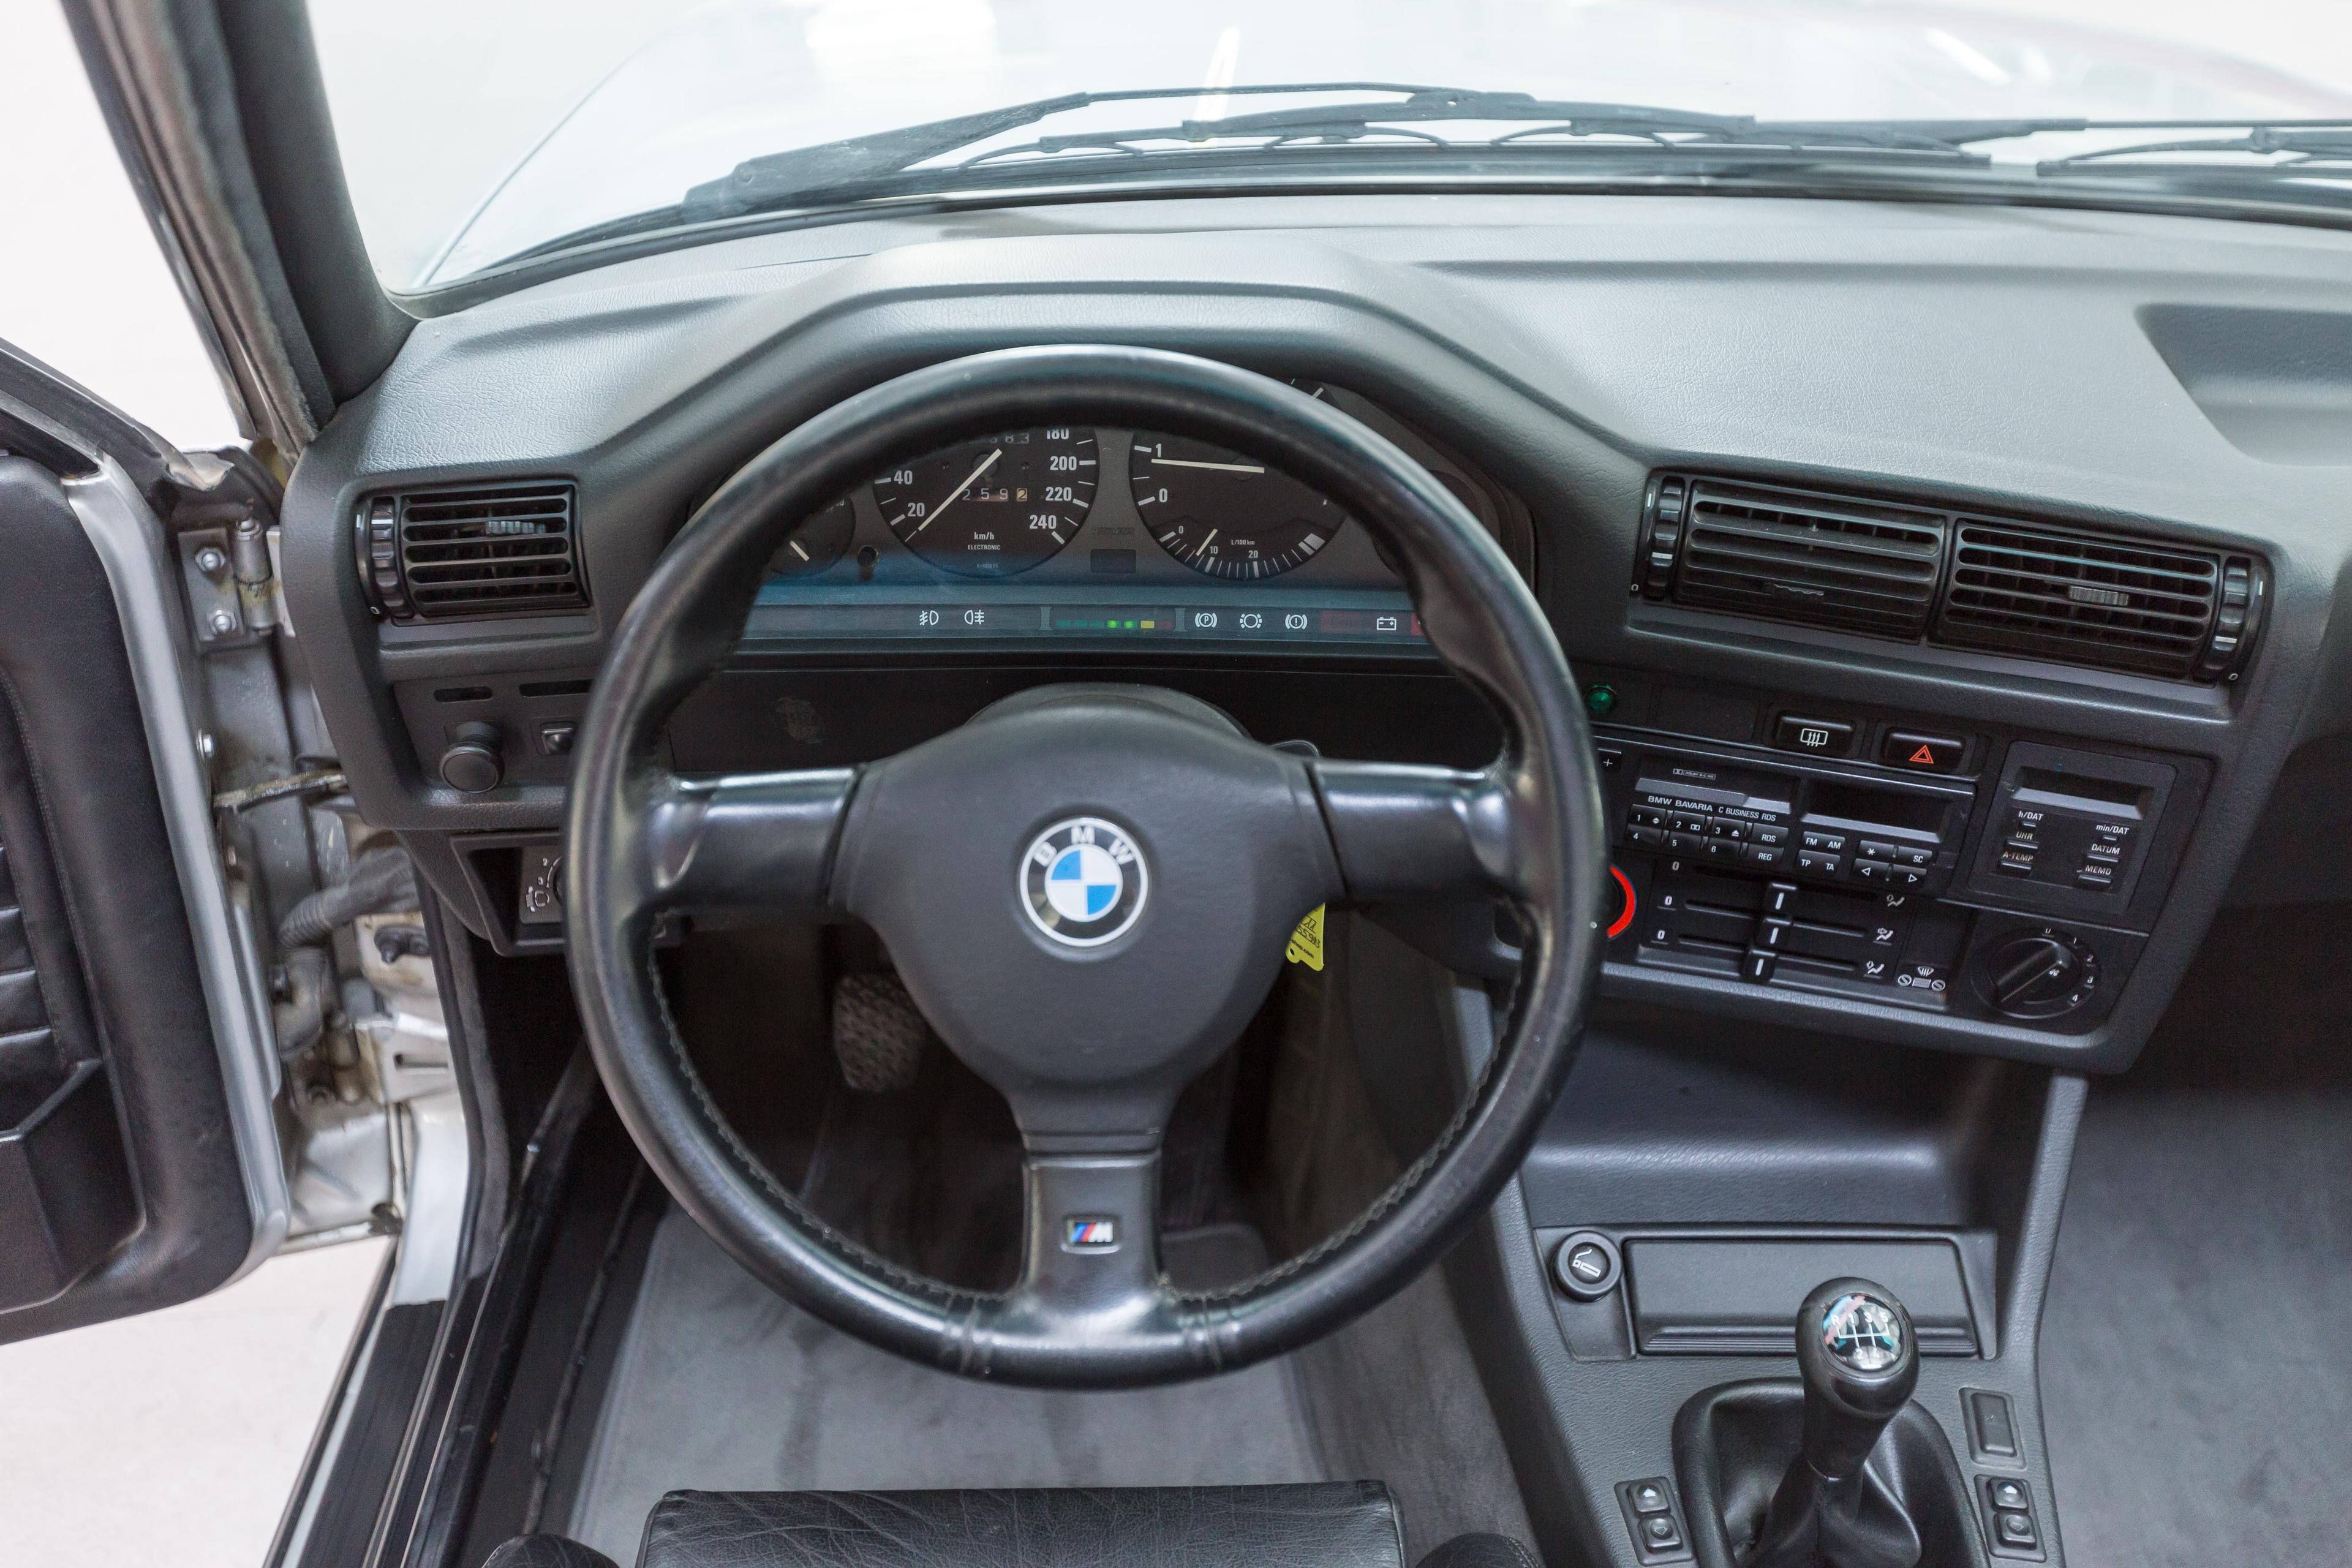 1992 BMW 320i (E30) Convertible